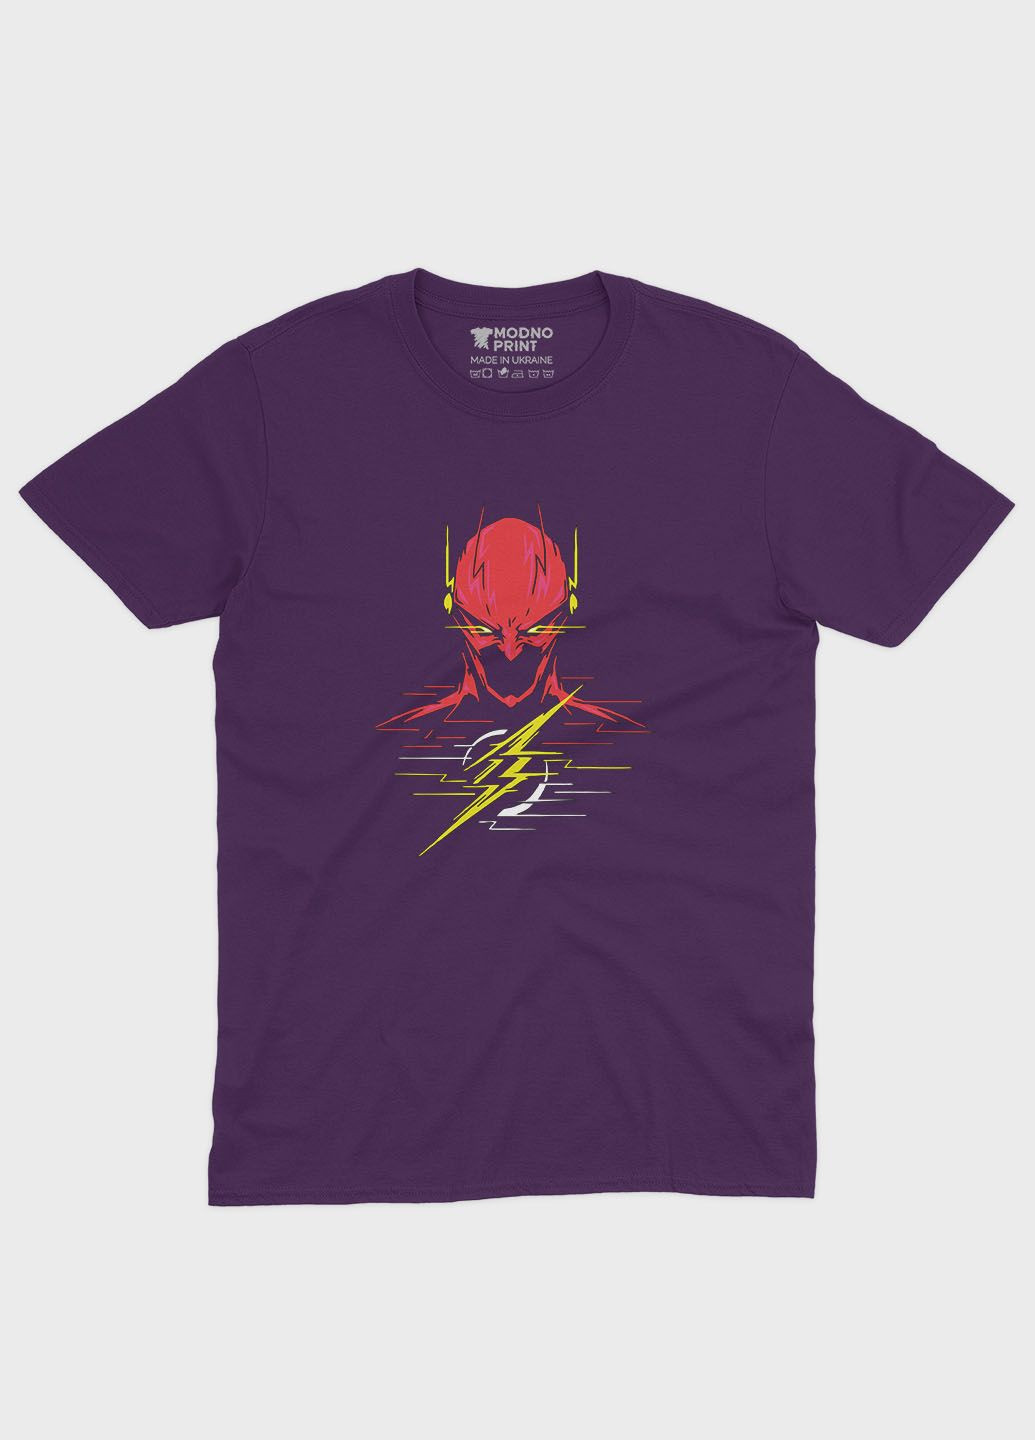 Фиолетовая демисезонная футболка для девочки с принтом супергероя - флэш (ts001-1-dby-006-010-005-g) Modno